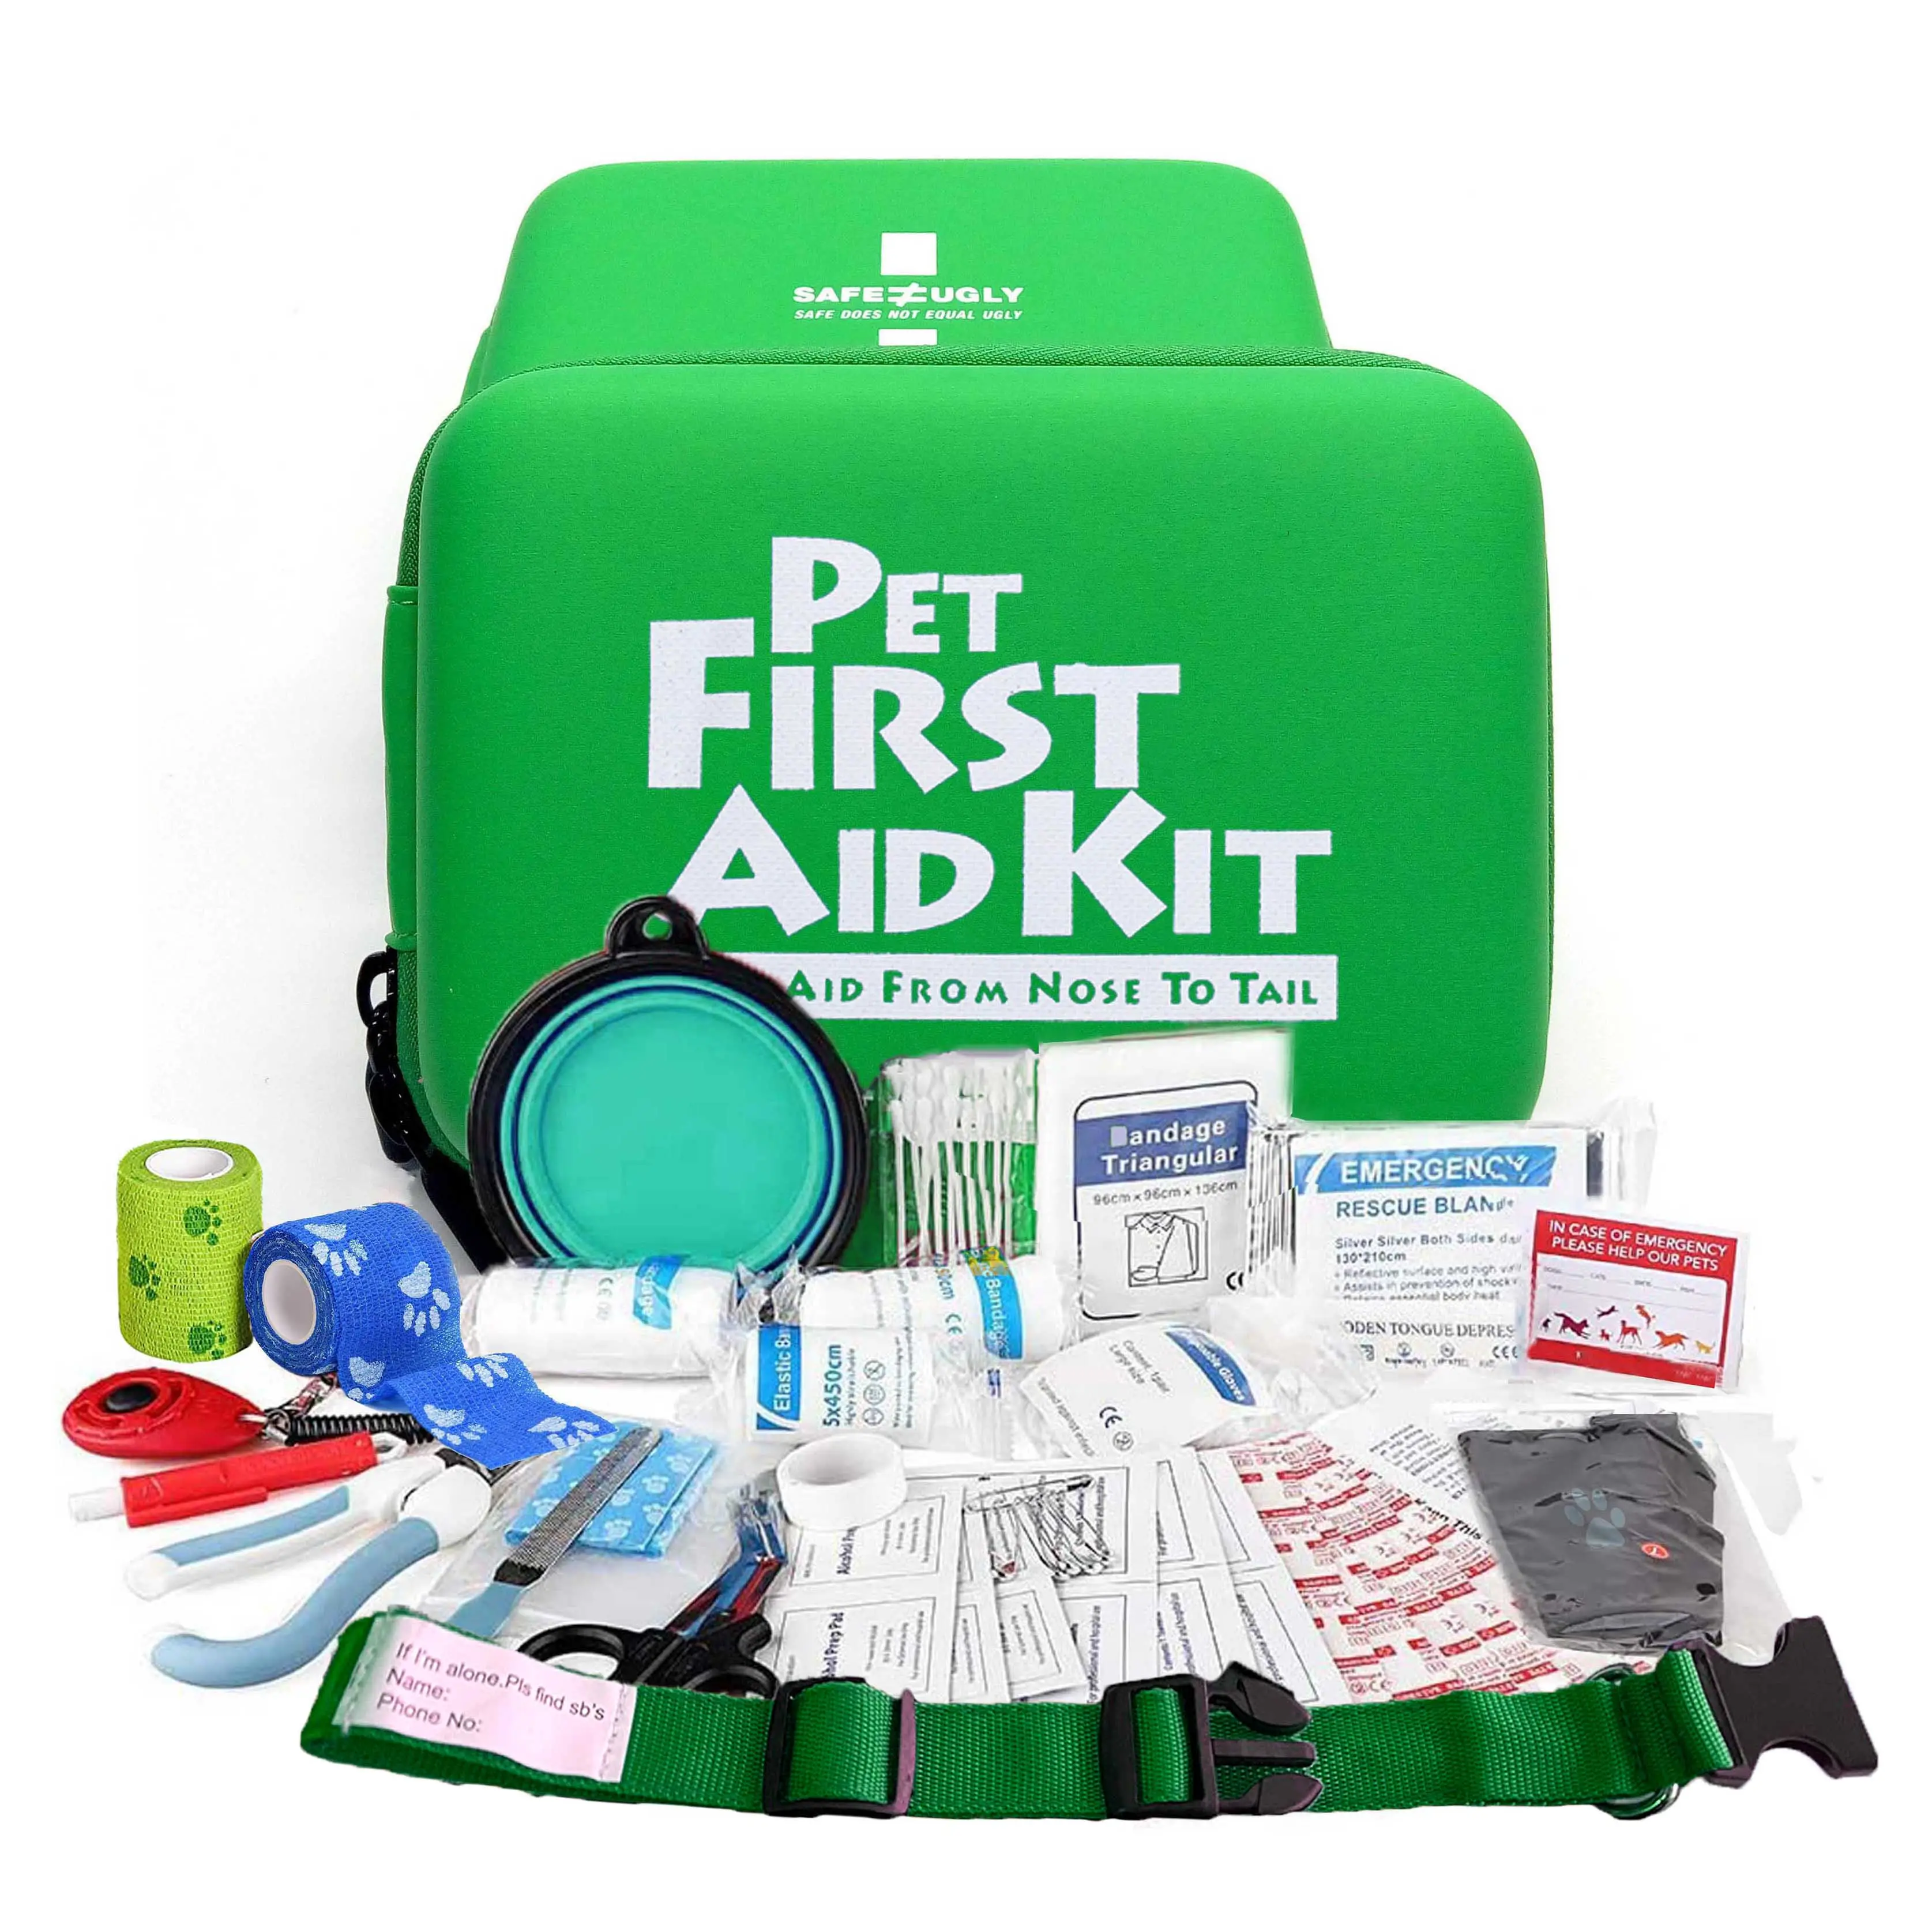 Kit de primeros auxilios portátil personalizado para mascotas, removedor de garrapatas y suministros médicos